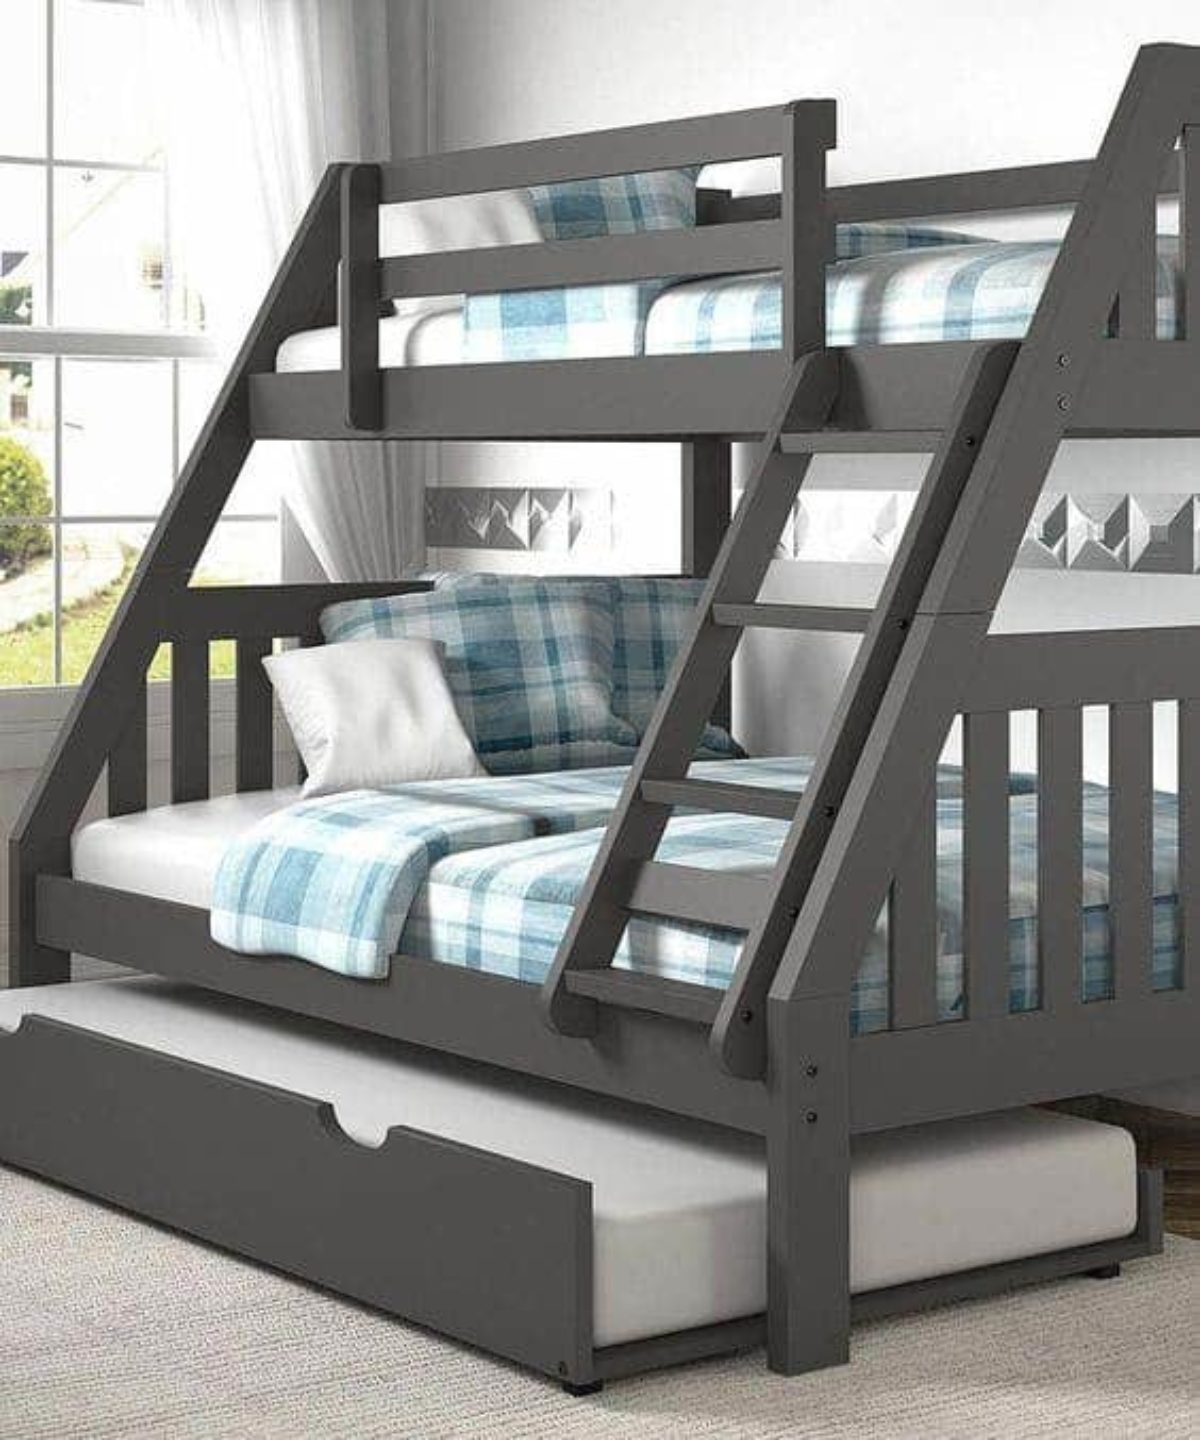 5 Steps To Make A Bunk Bed Ladder Safer, How Wide Should A Bunk Bed Ladder Be